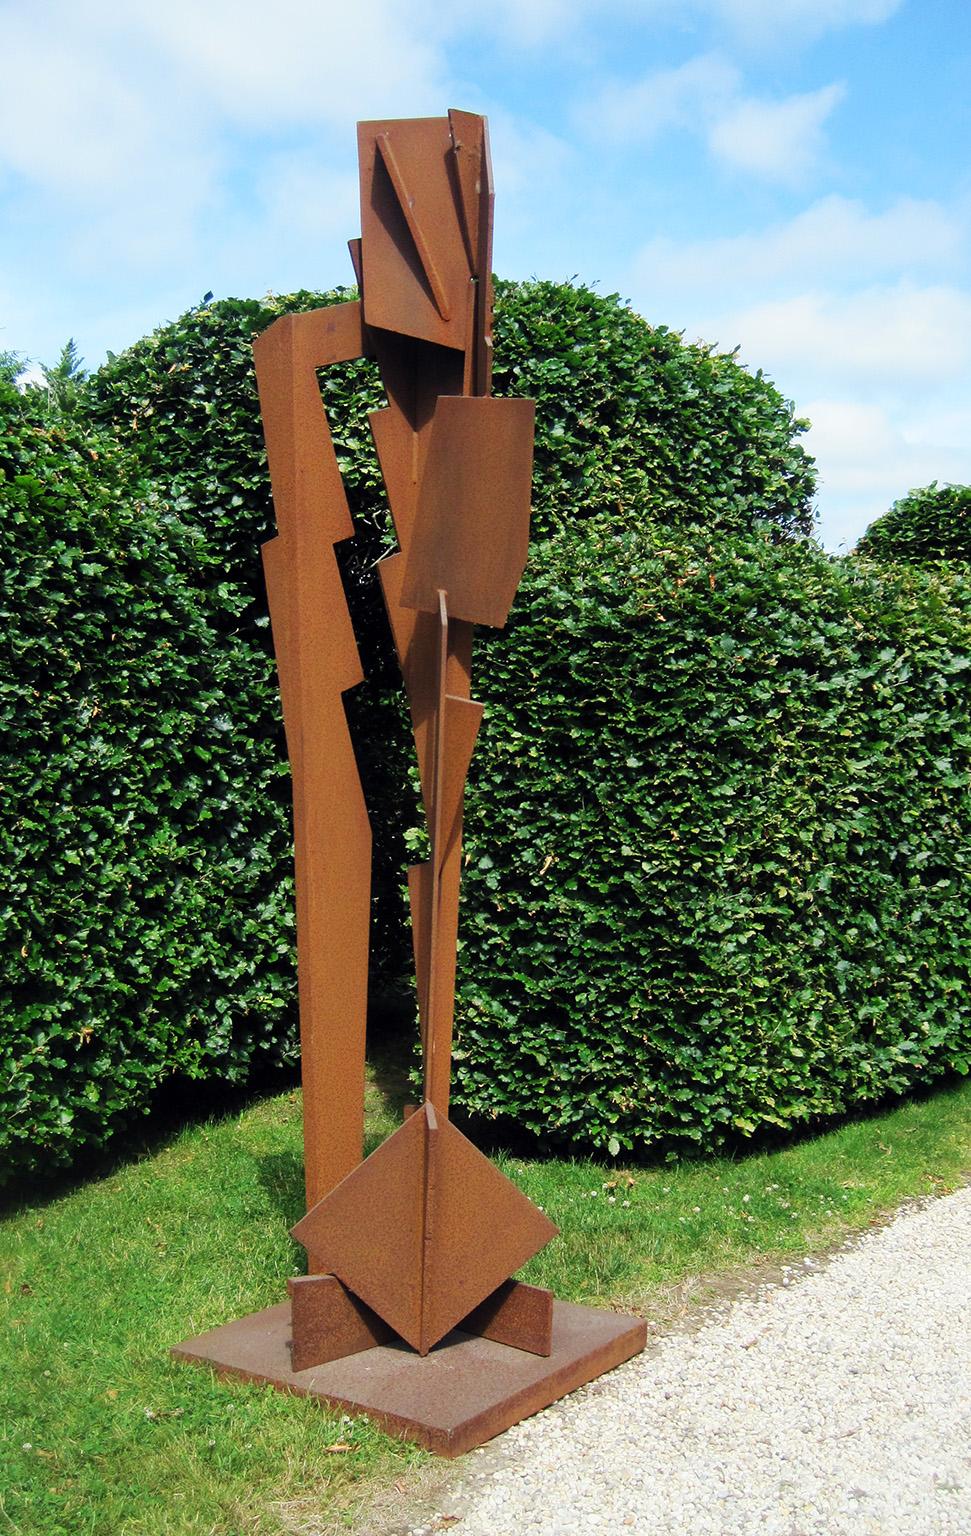 Joel Perlman Abstract Sculpture - "Sky Ryder" Abstract, Industrial, Steel Metal Outdoor Sculpture